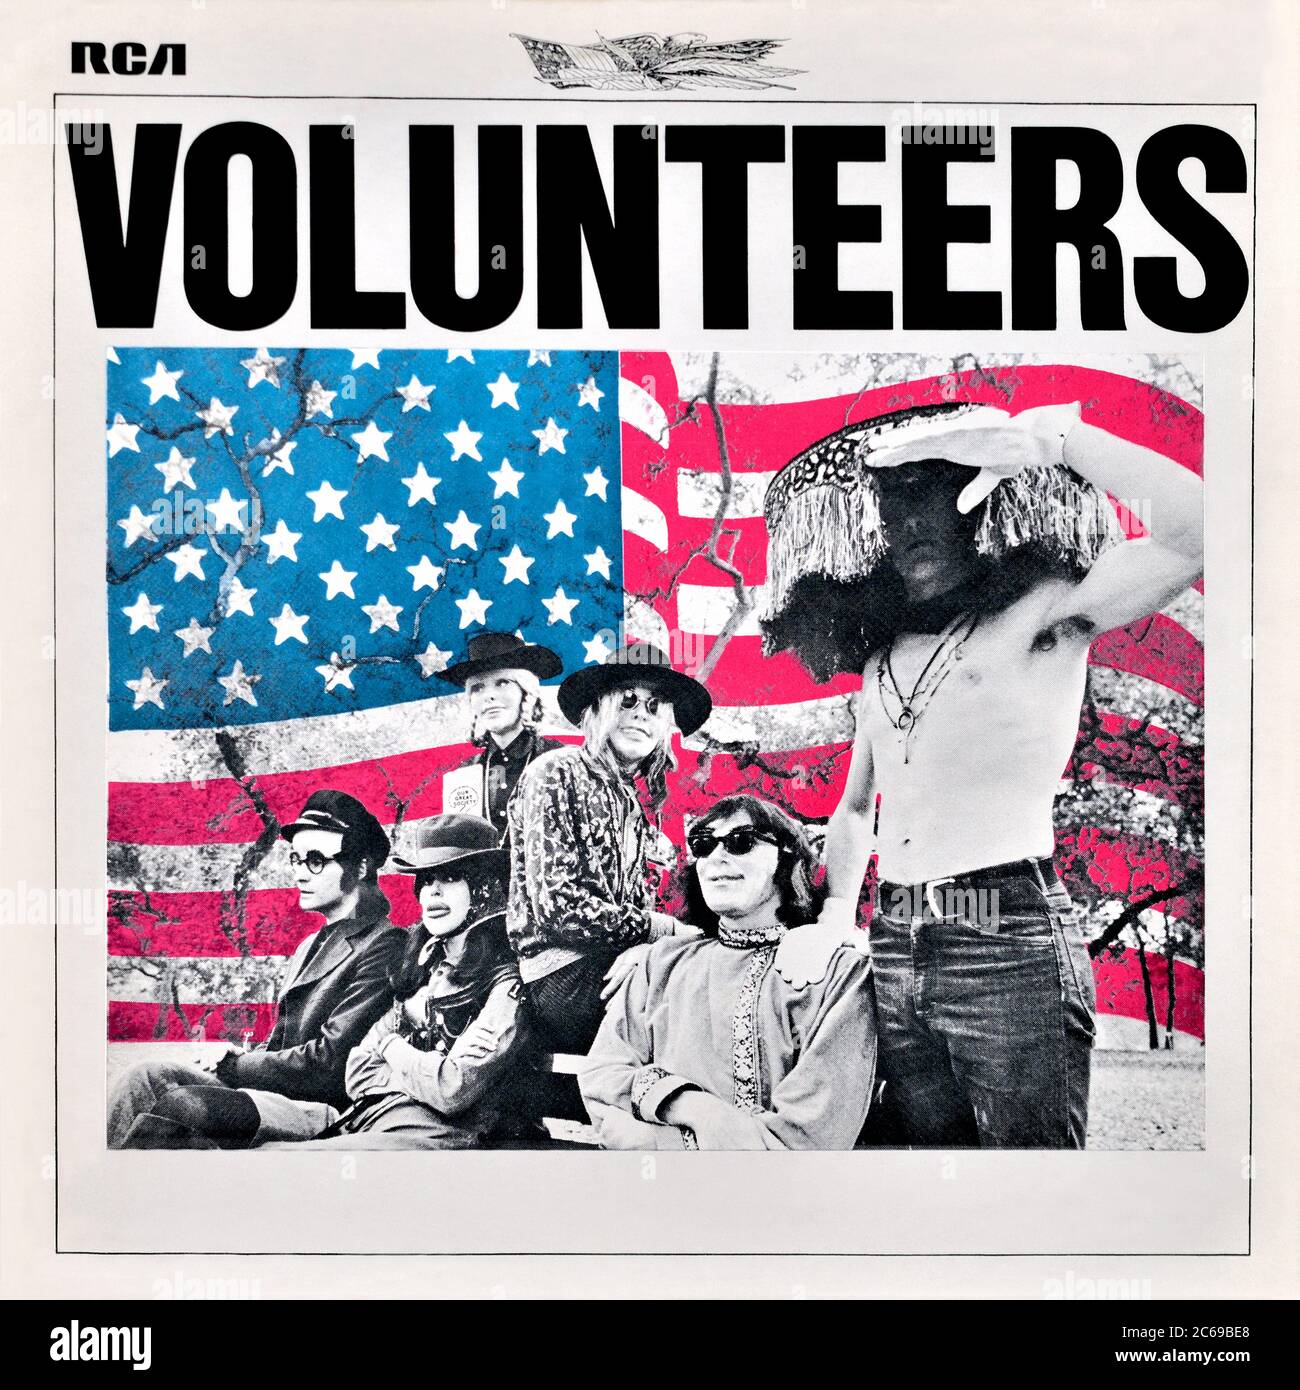 Jefferson Airplane - original vinyl album cover - Volunteers - 1969 Stock Photo